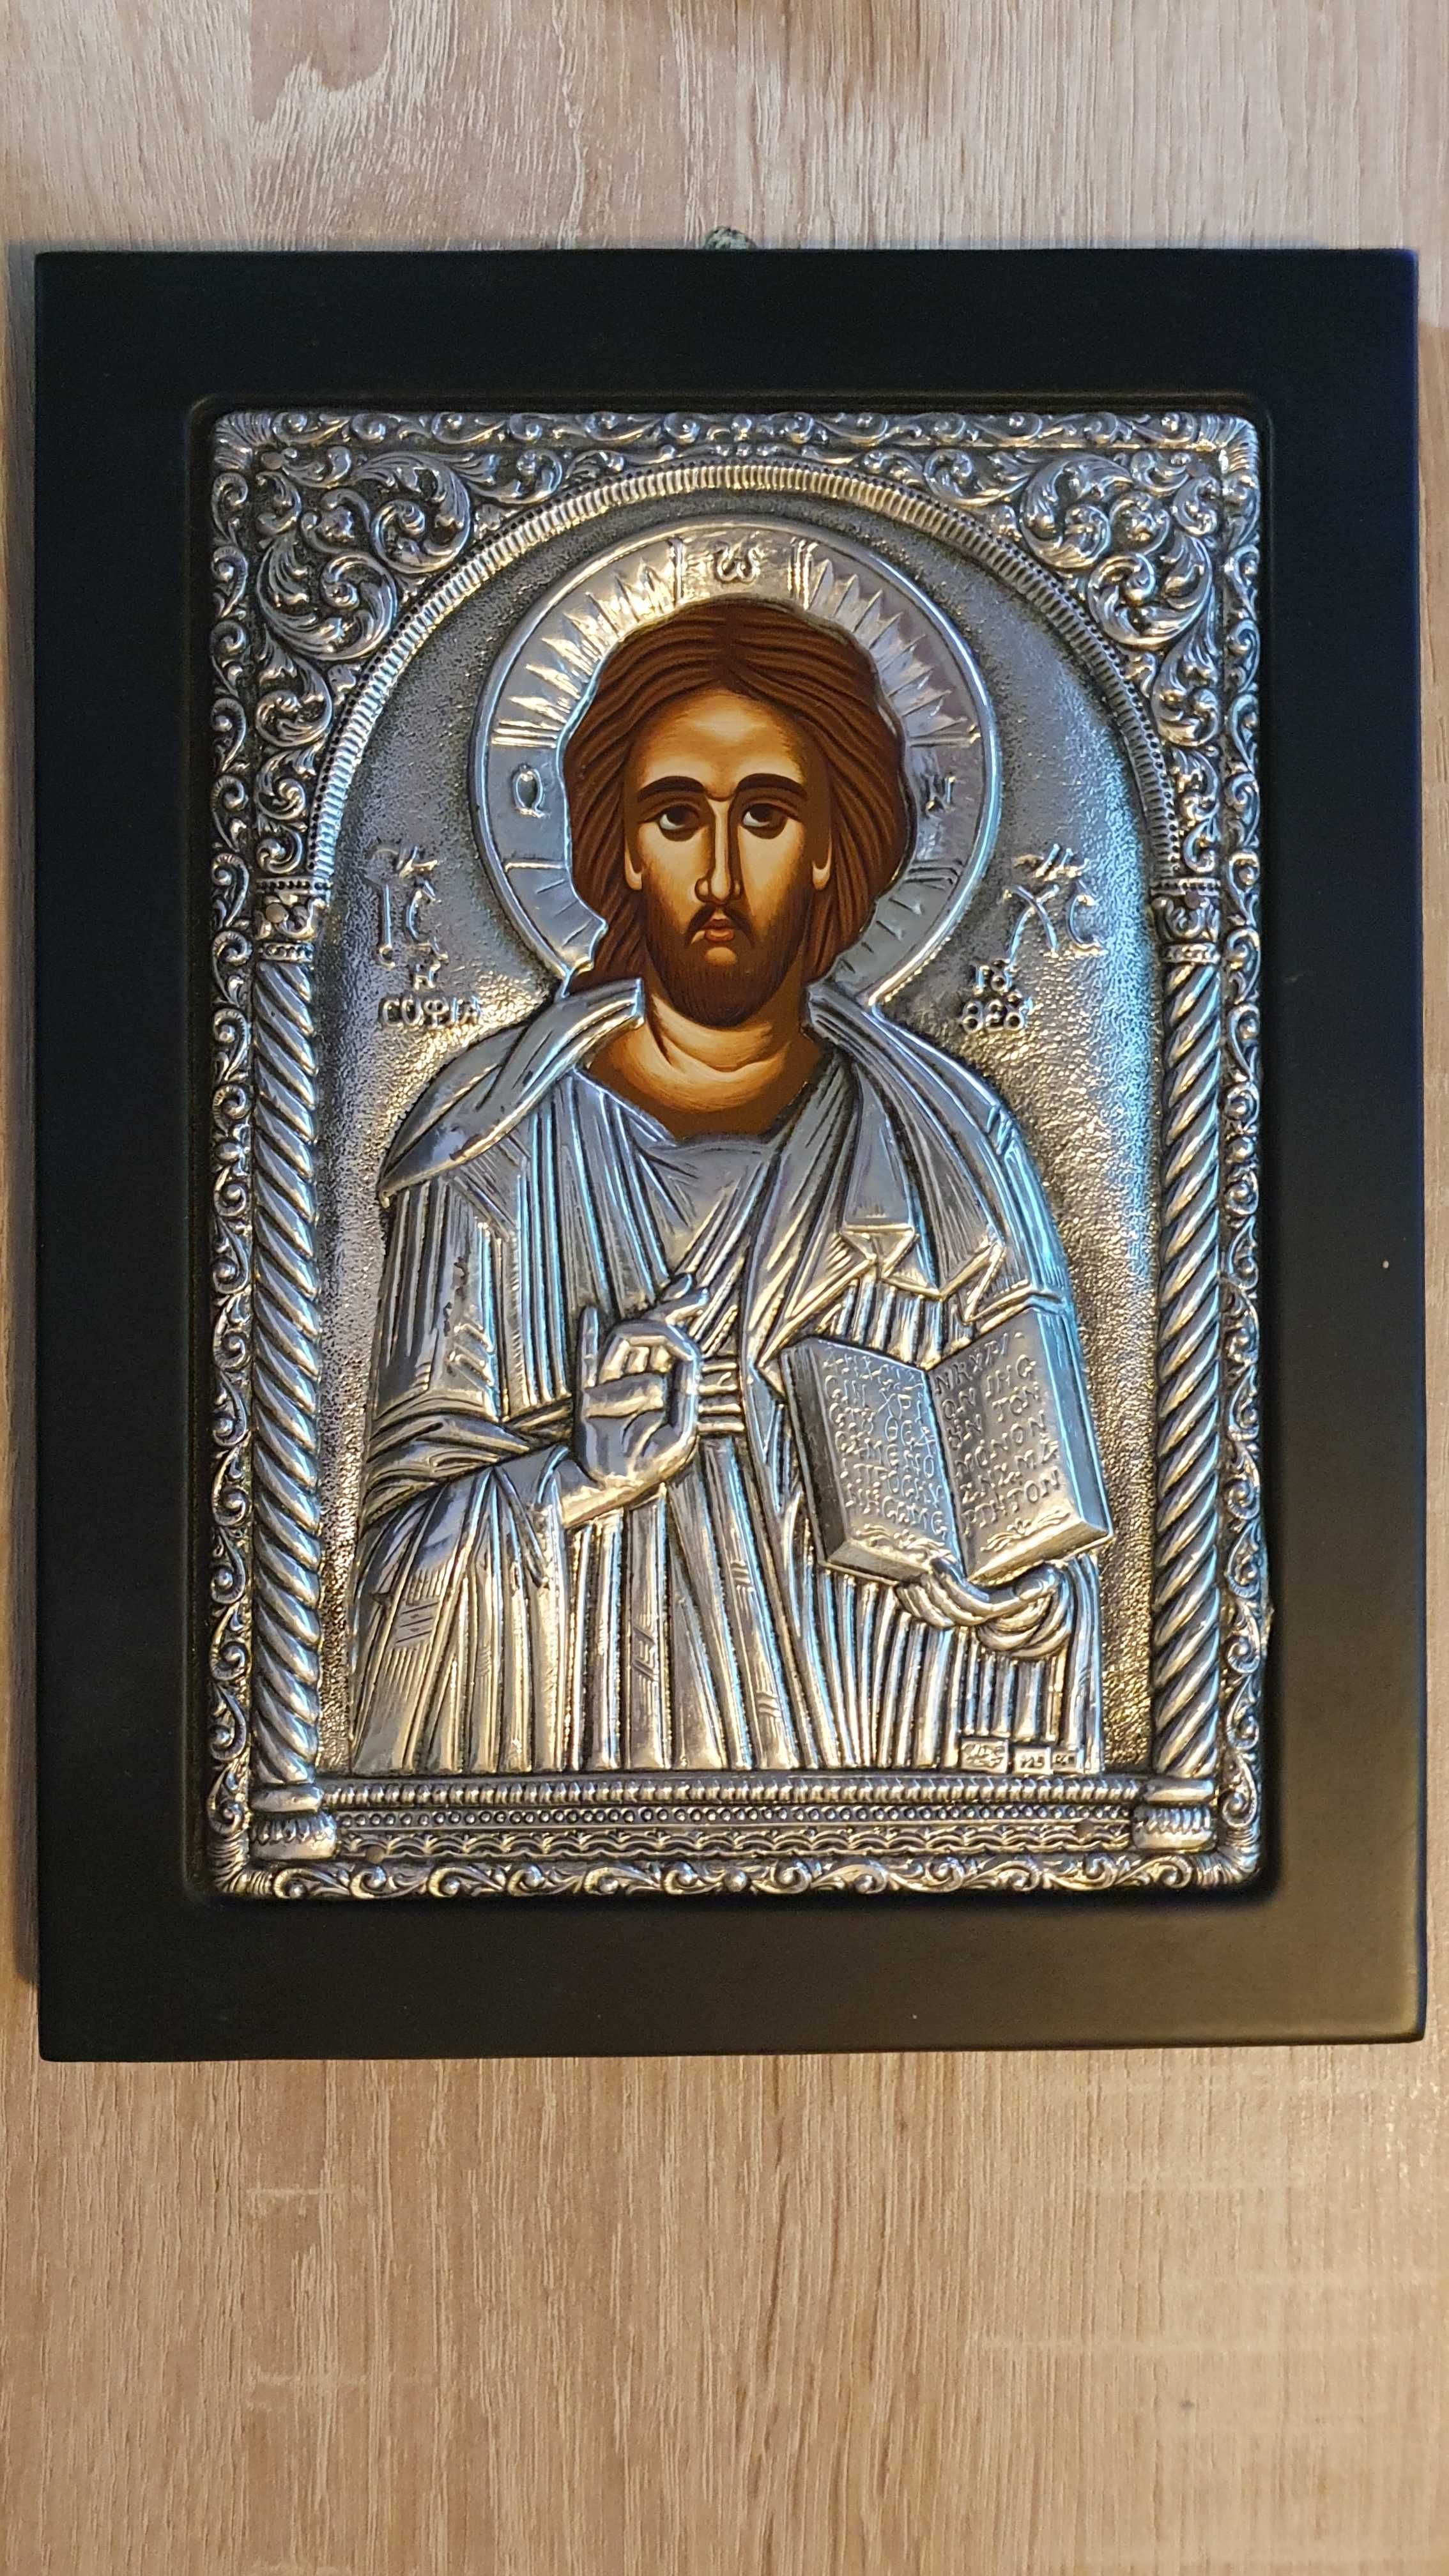 Icoana bizantina IIsus Clarte Golden Seal placata .925 argint